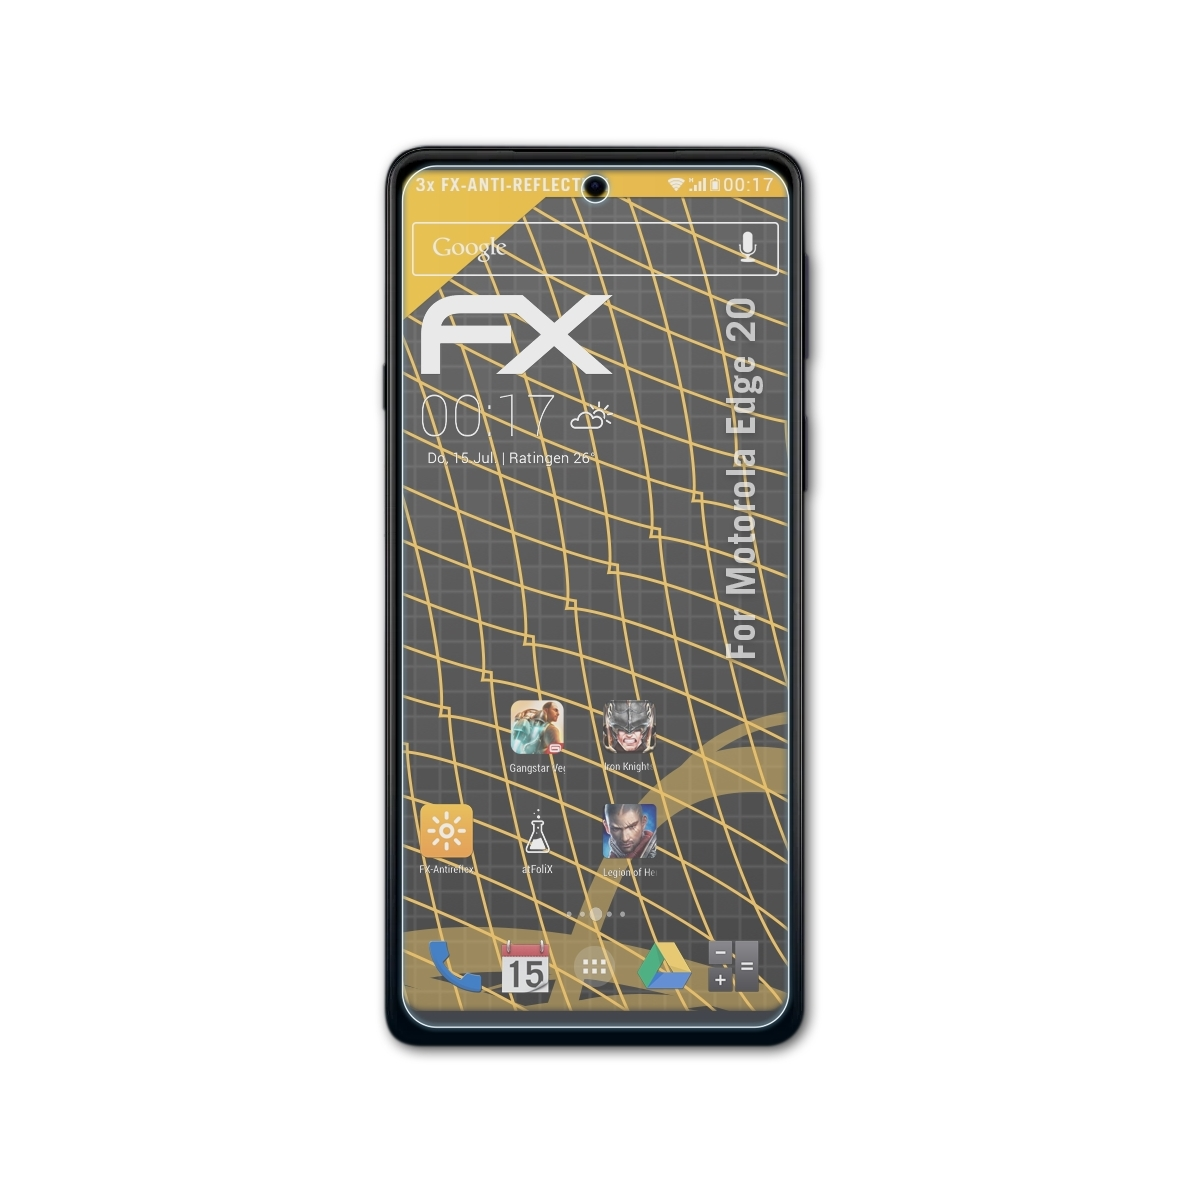 ATFOLIX Edge Displayschutz(für 3x FX-Antireflex Motorola 20)